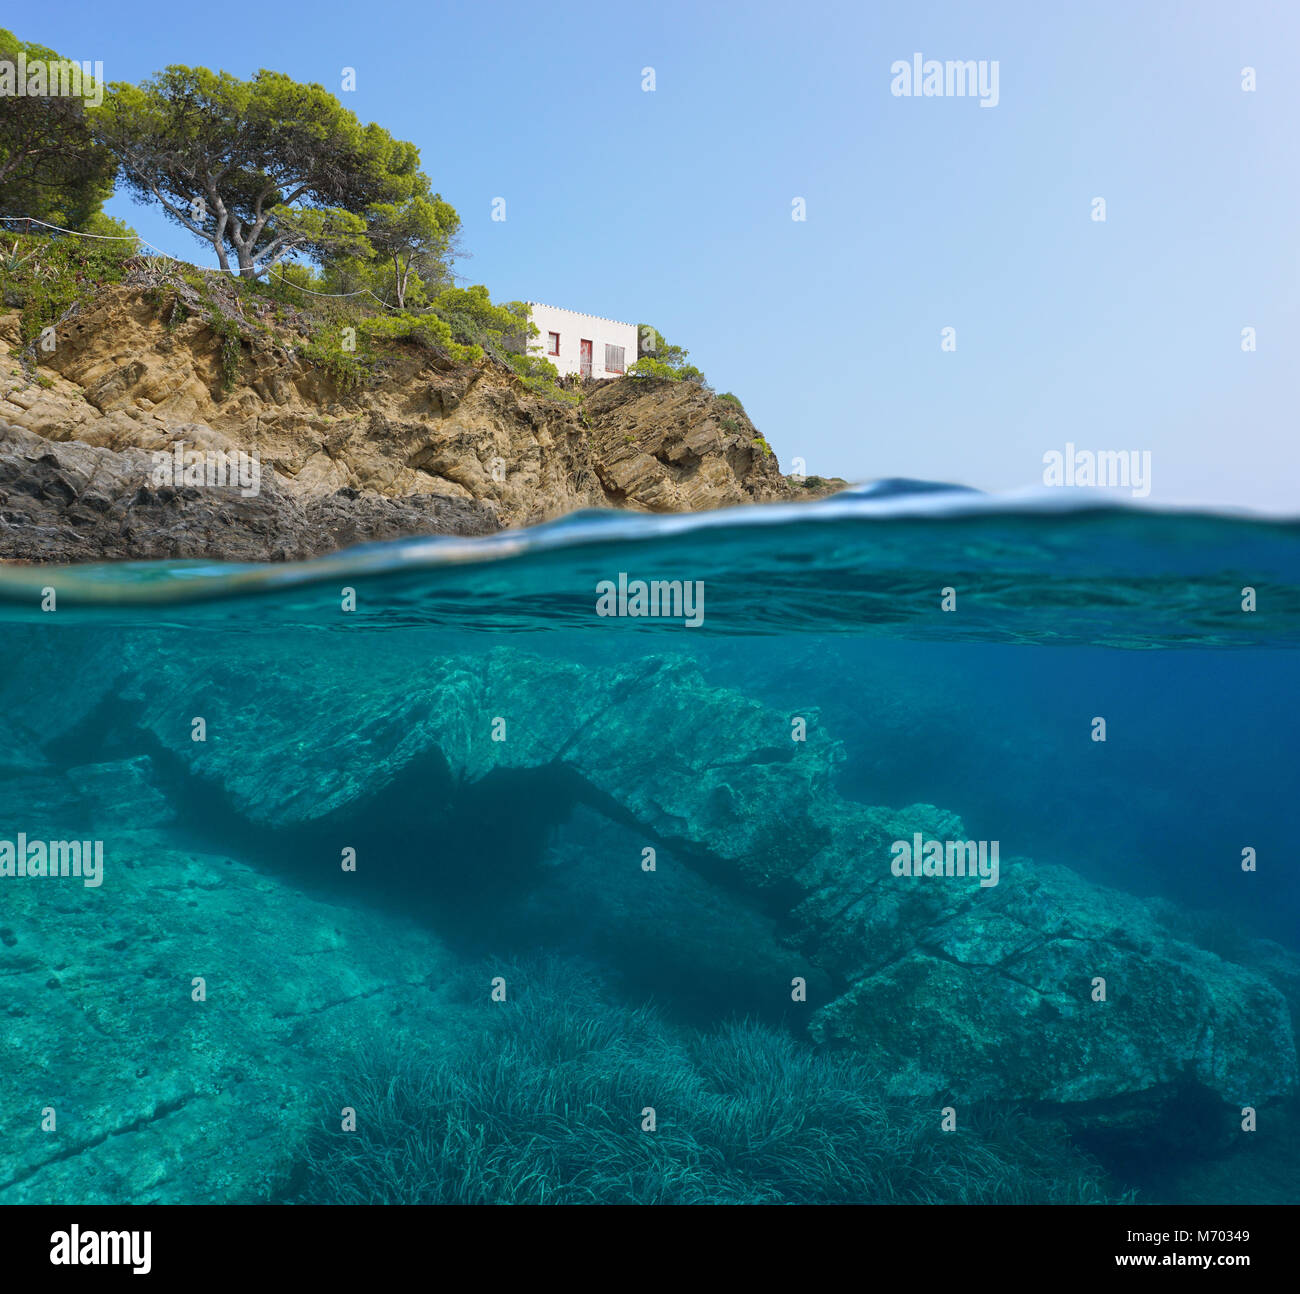 Spagna costa mediterranea con una piccola casa e una formazione rocciosa naturale subacquea, vista suddivisa al di sopra e al di sotto della superficie del mare, Catalonia, Costa Brava Foto Stock